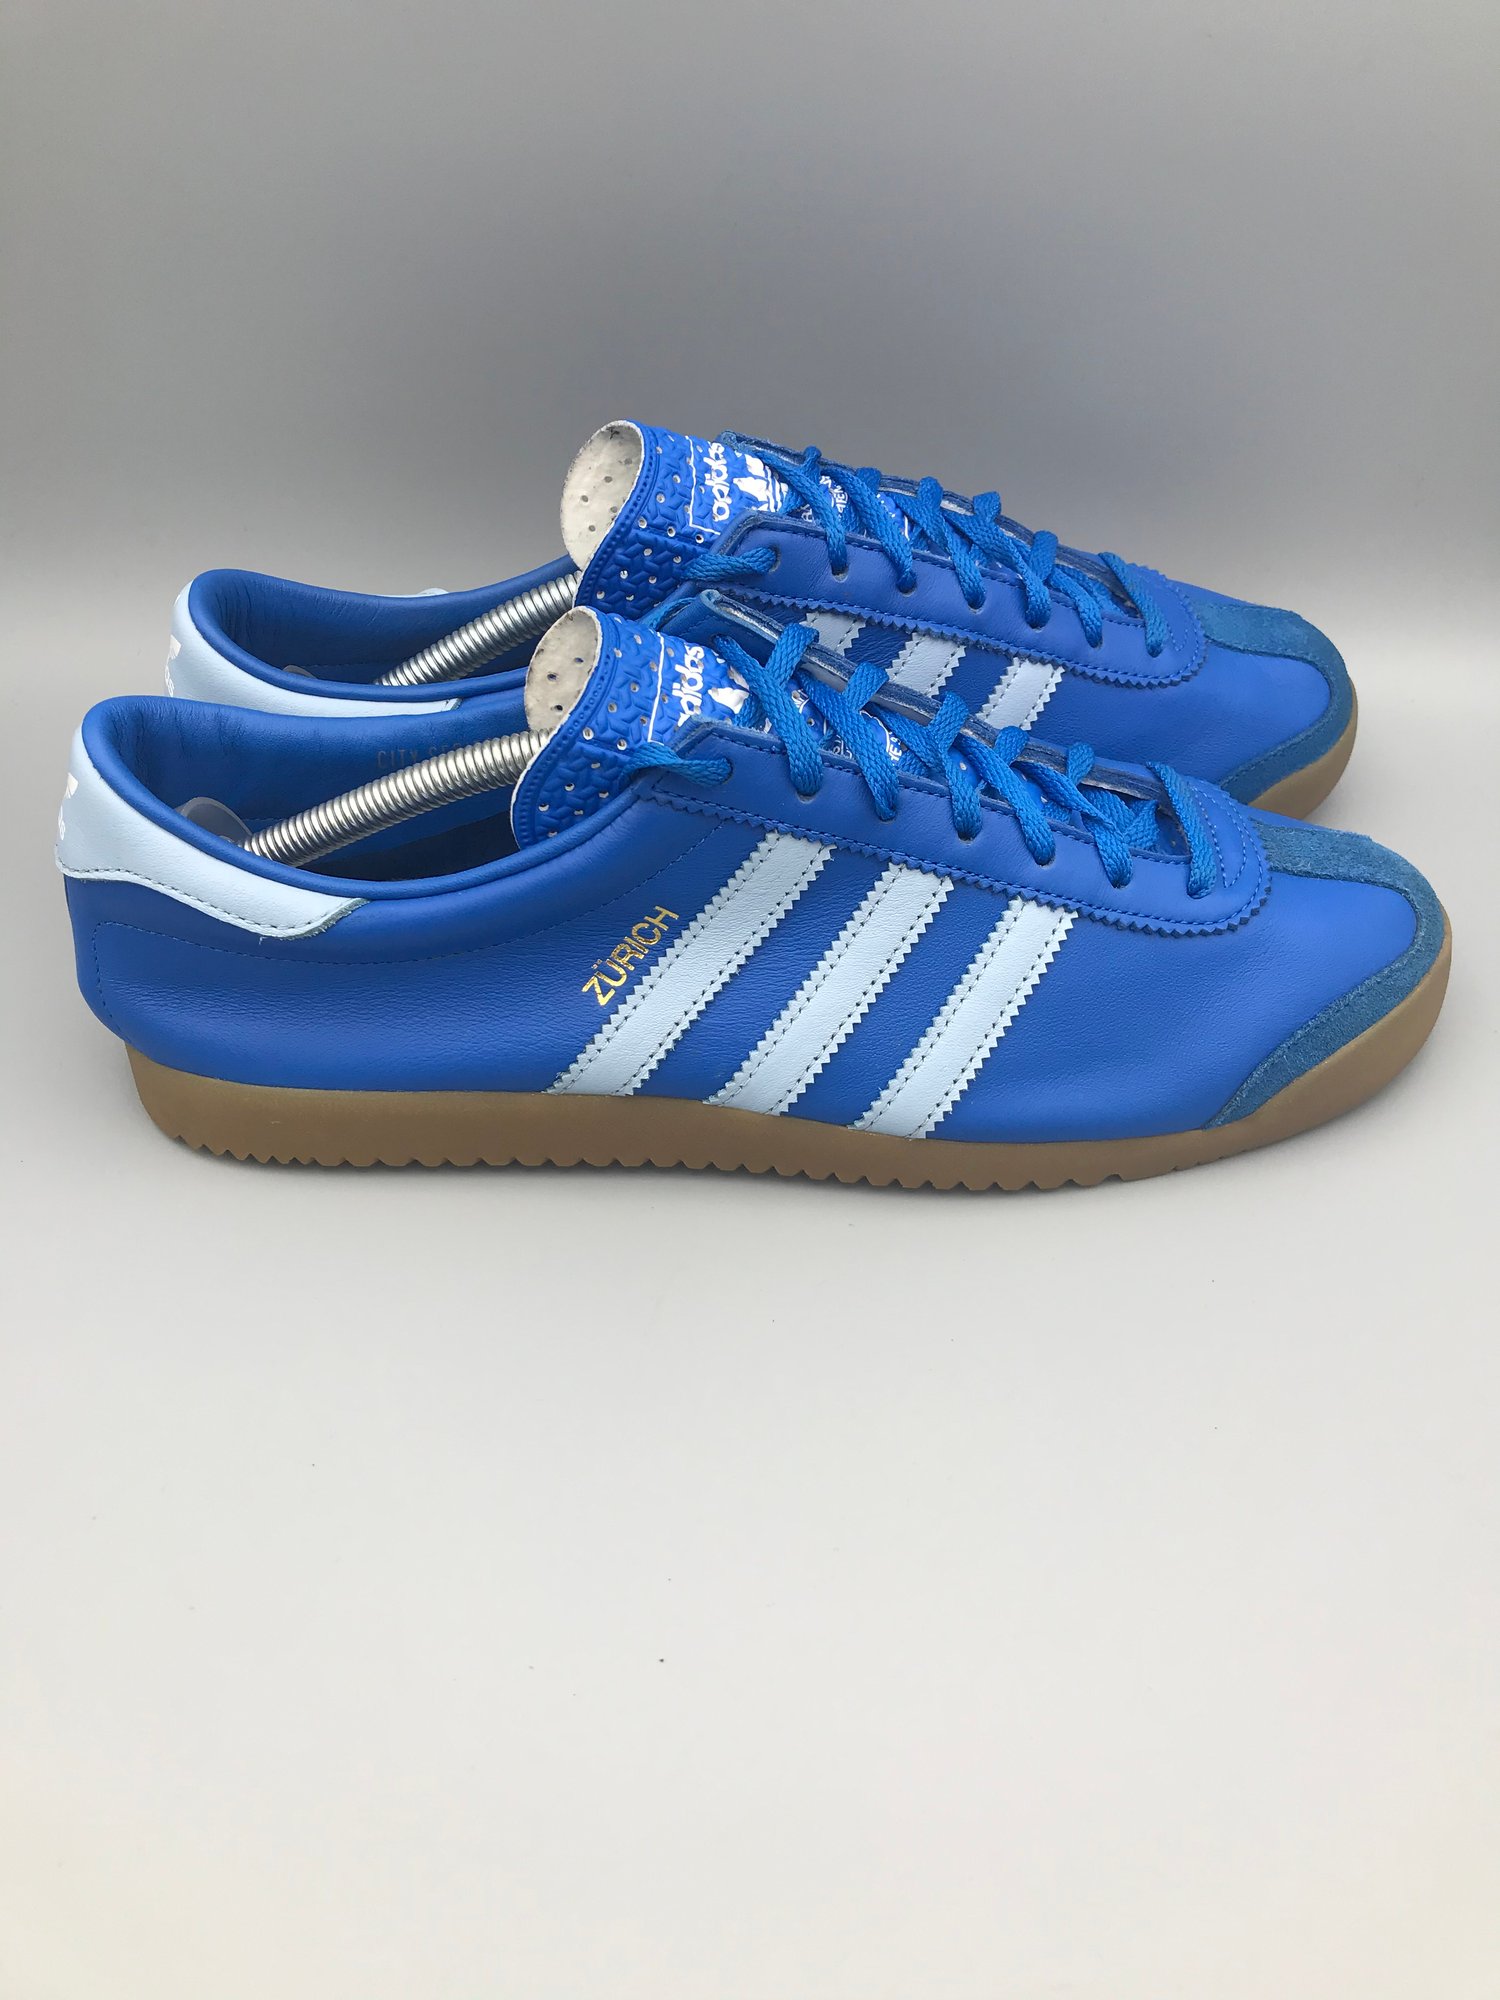 Adidas Zurich UK10 - Pre Loved | OriginalSoles